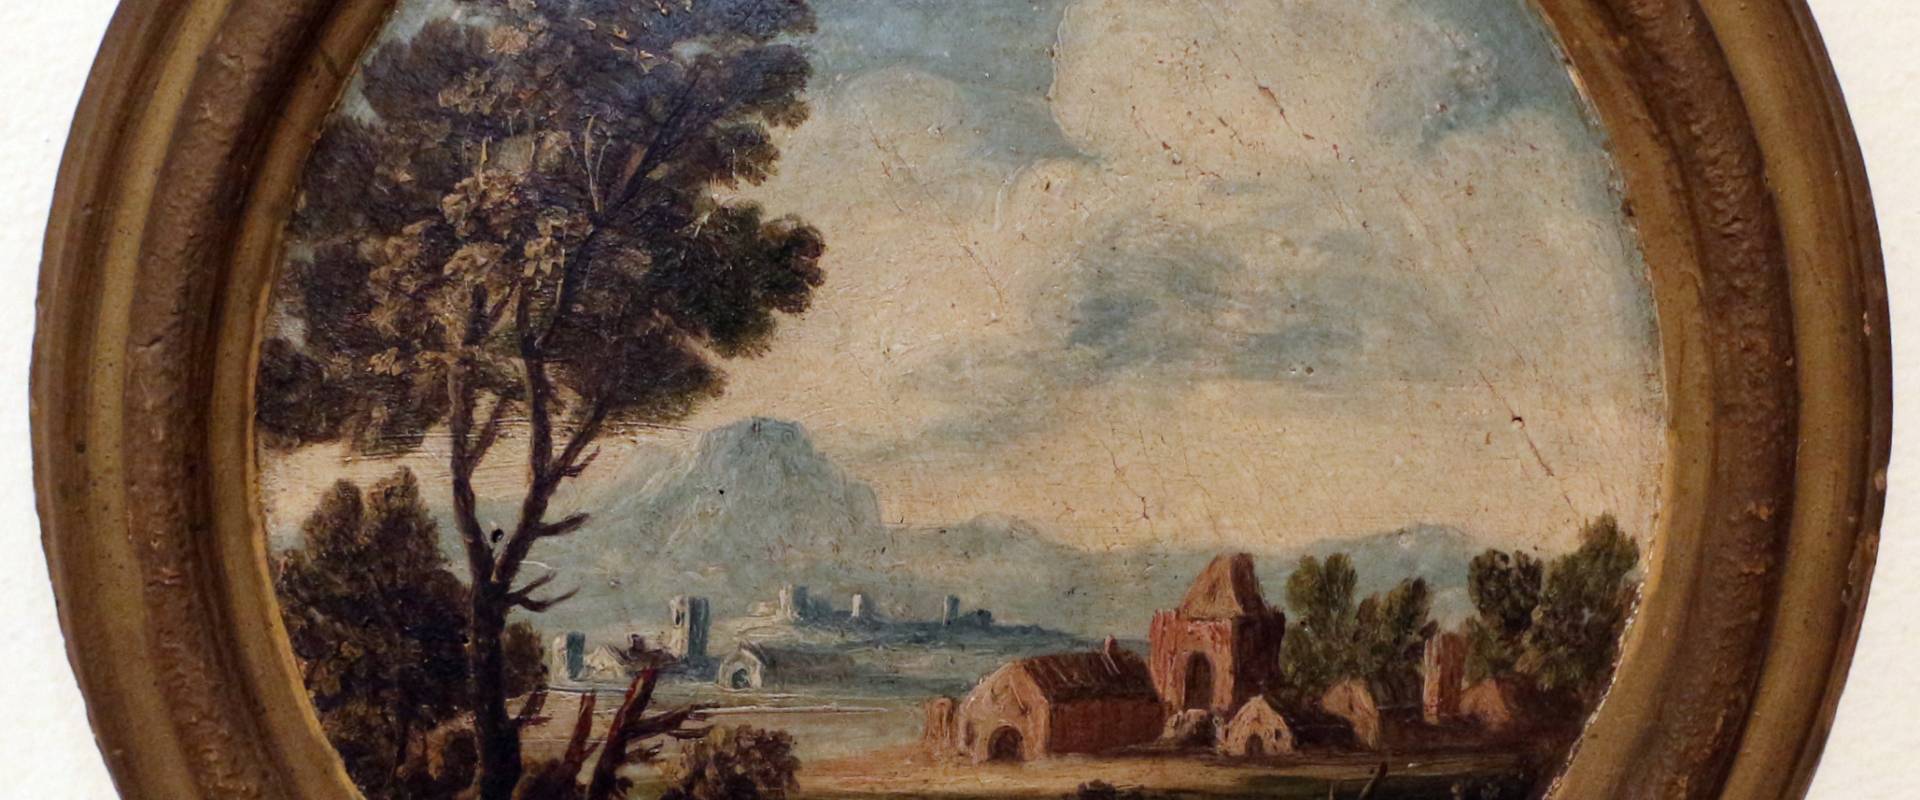 Giuseppe zola (scuola), paesaggio con due donne, 1700-40 ca photo by Sailko